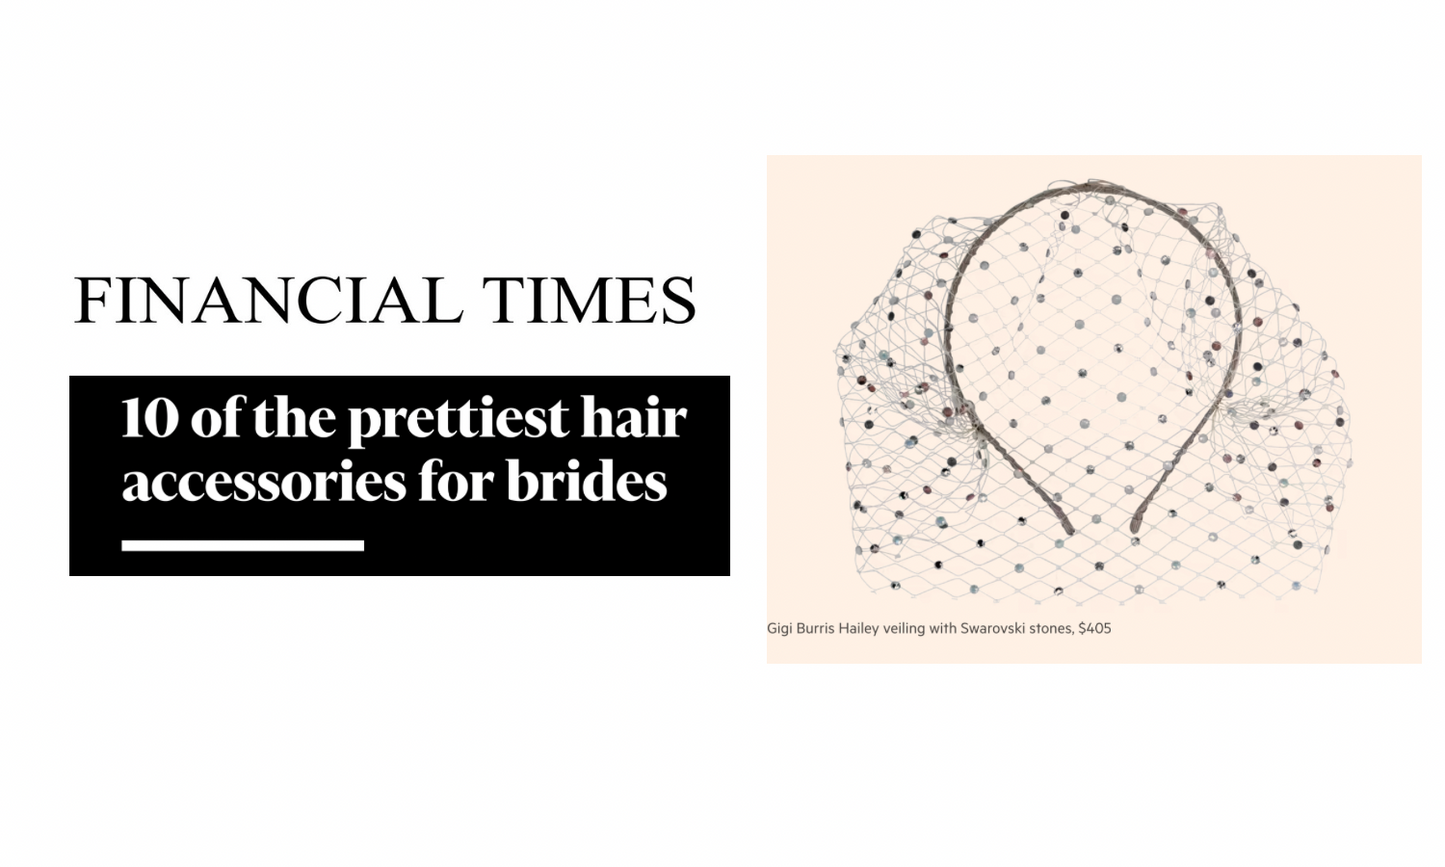 GIGI BURRIS FEATURED IN FINANCIAL TIMES BRIDAL HAIR ACCESSORIES EDITORIAL